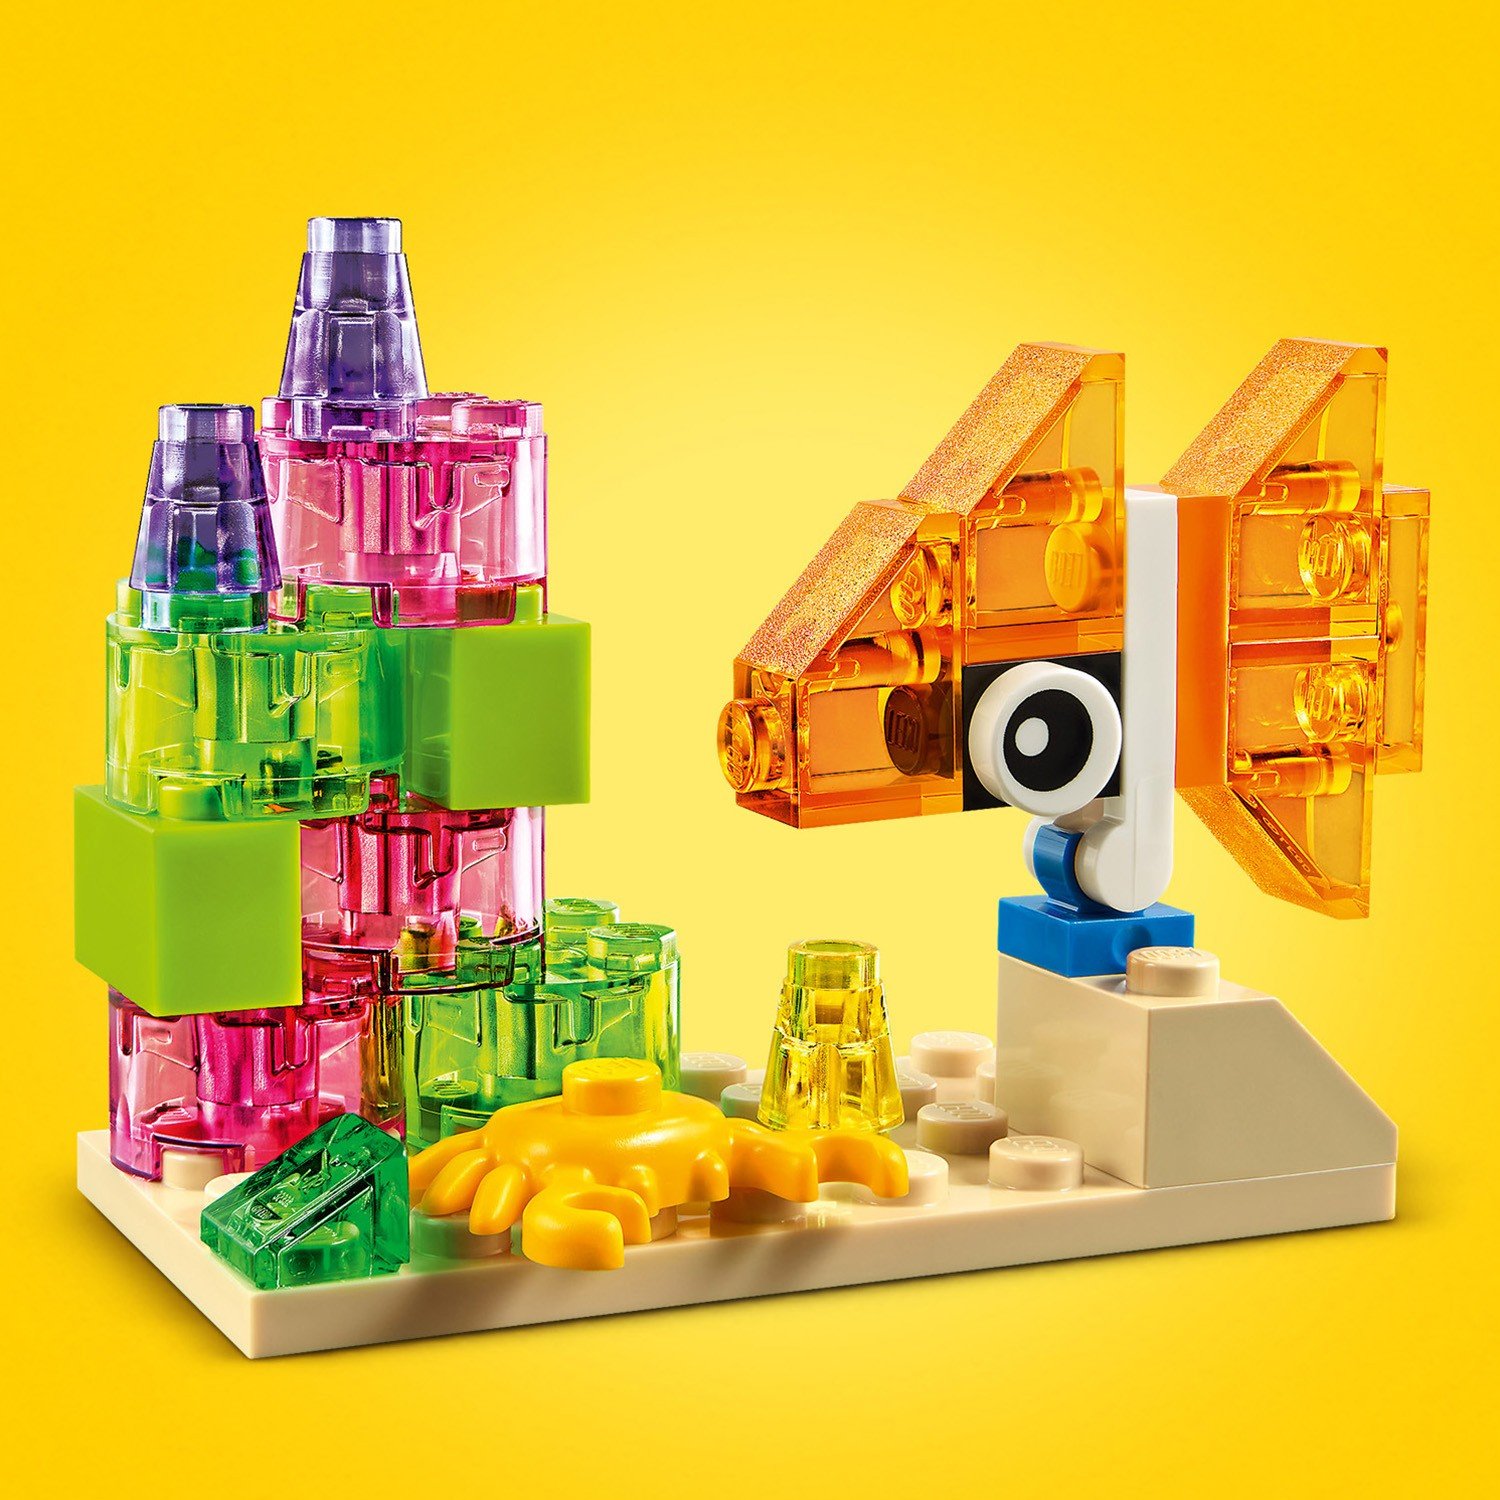 Конструктор LEGO Classic Прозрачные кубики 11013